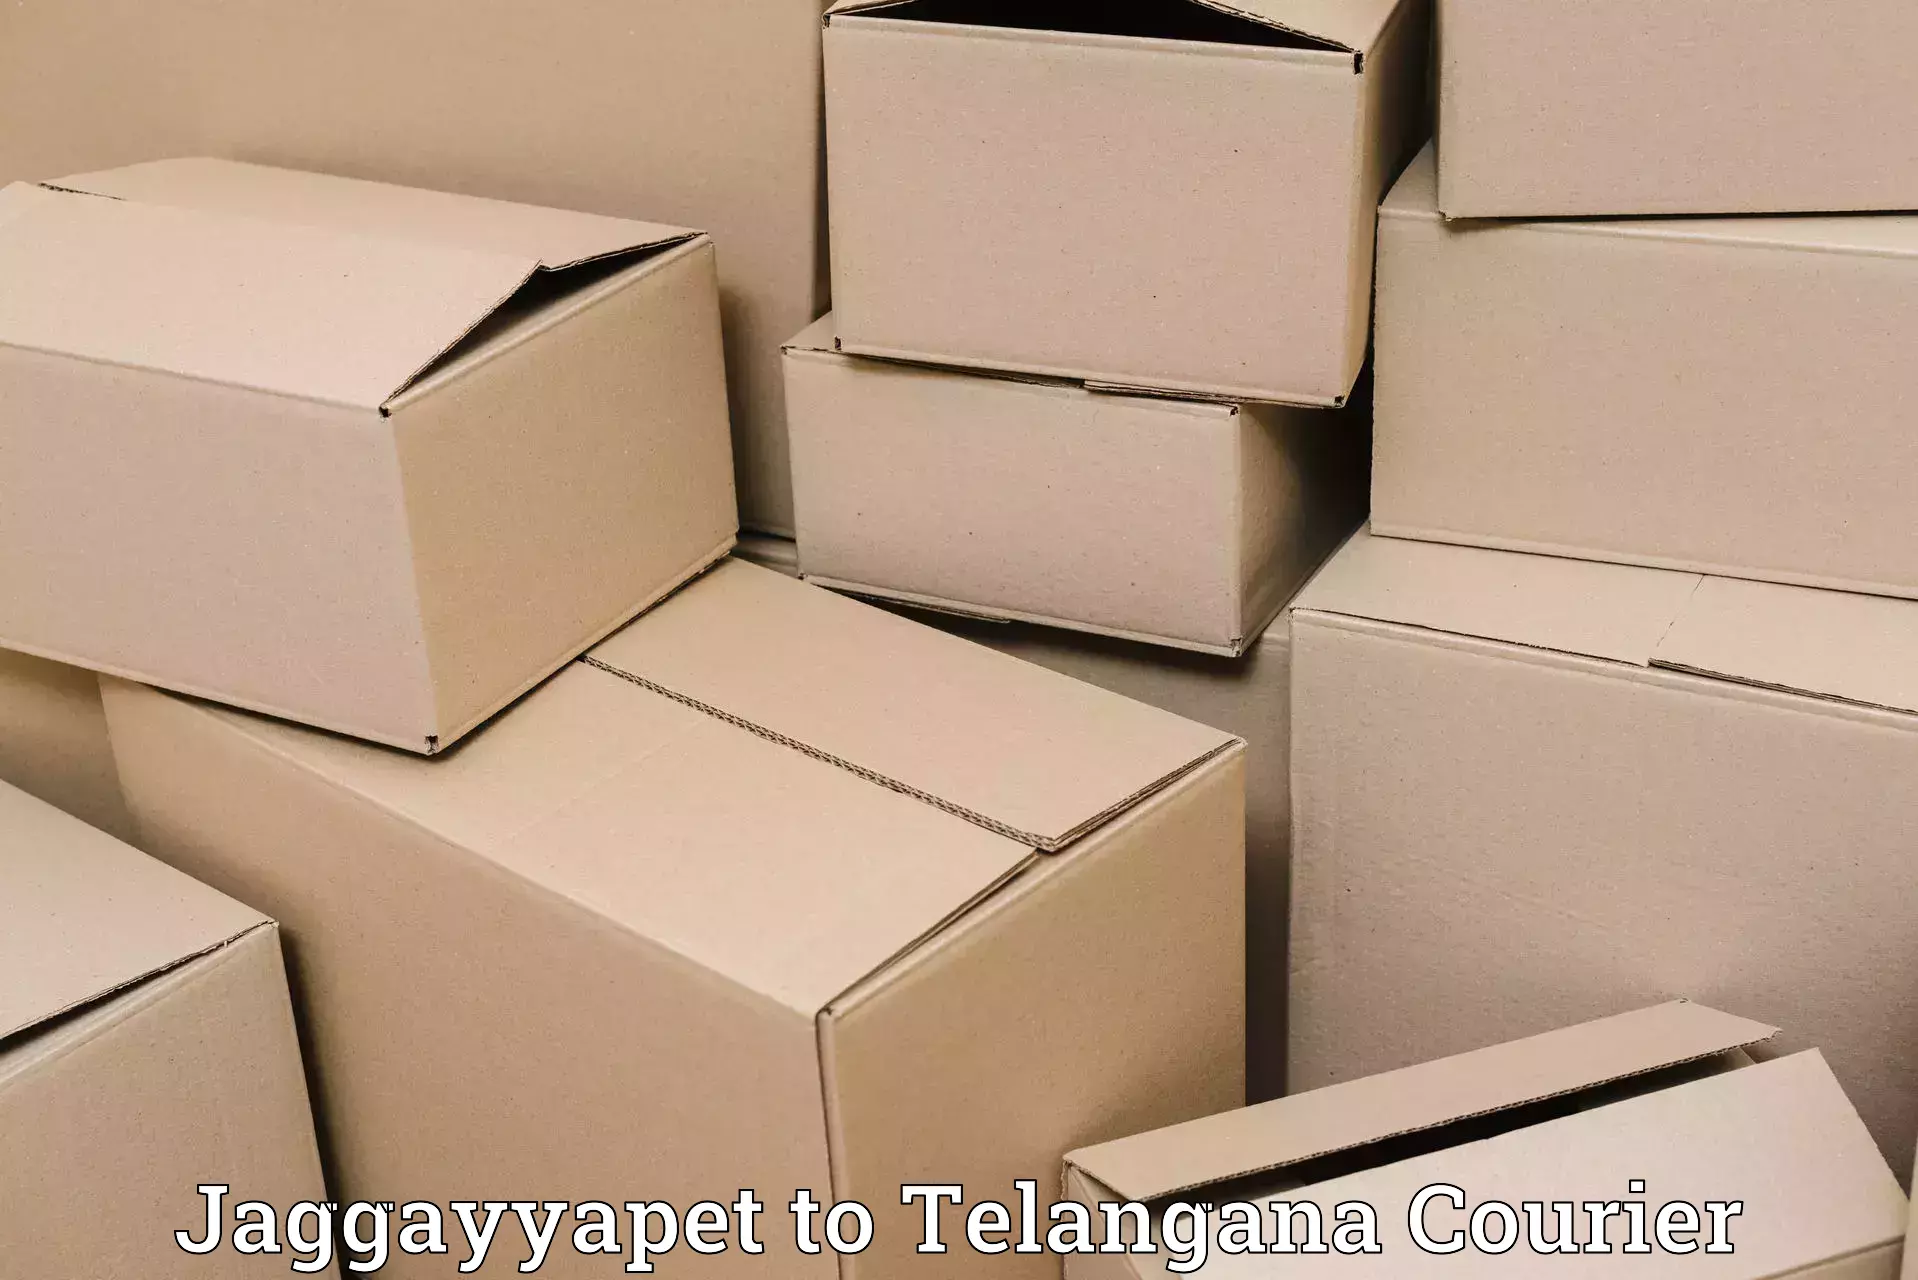 International parcel service Jaggayyapet to Thungathurthi